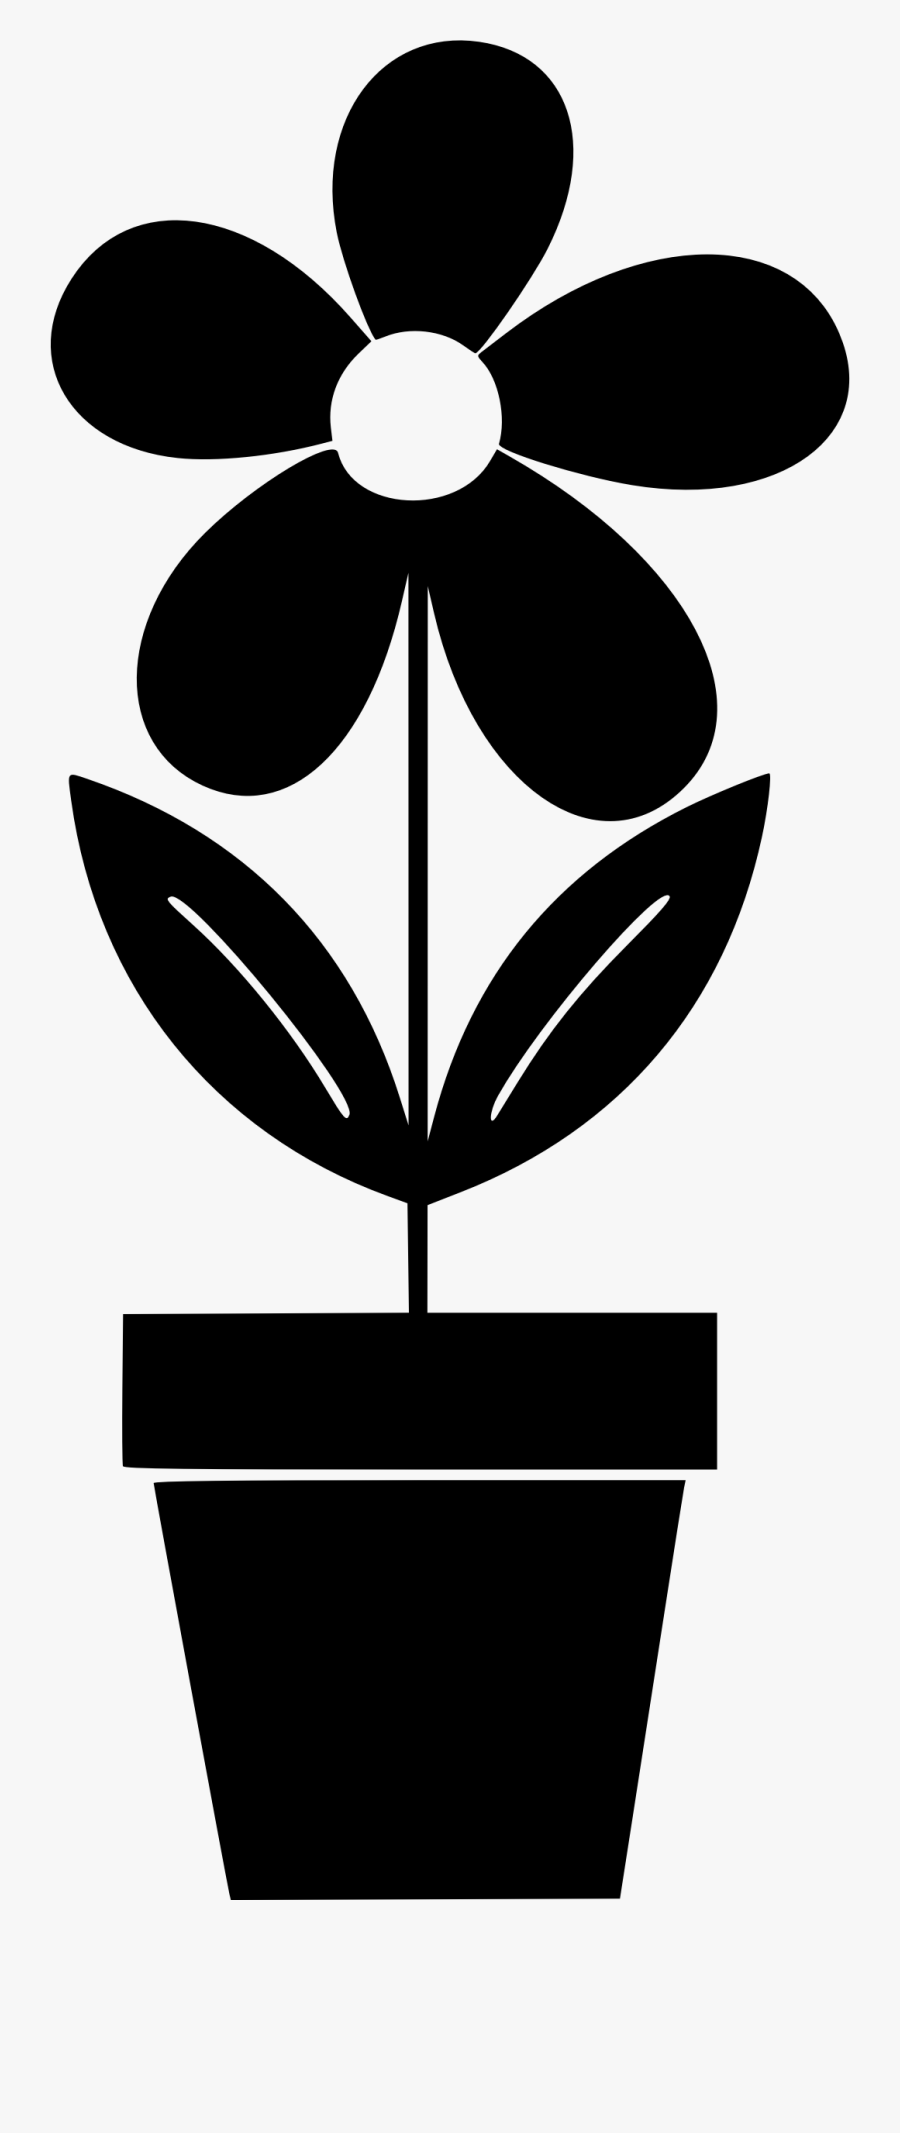 Potted Plant Clip Arts - Potted Plant Silhouette Clip Art, Transparent Clipart